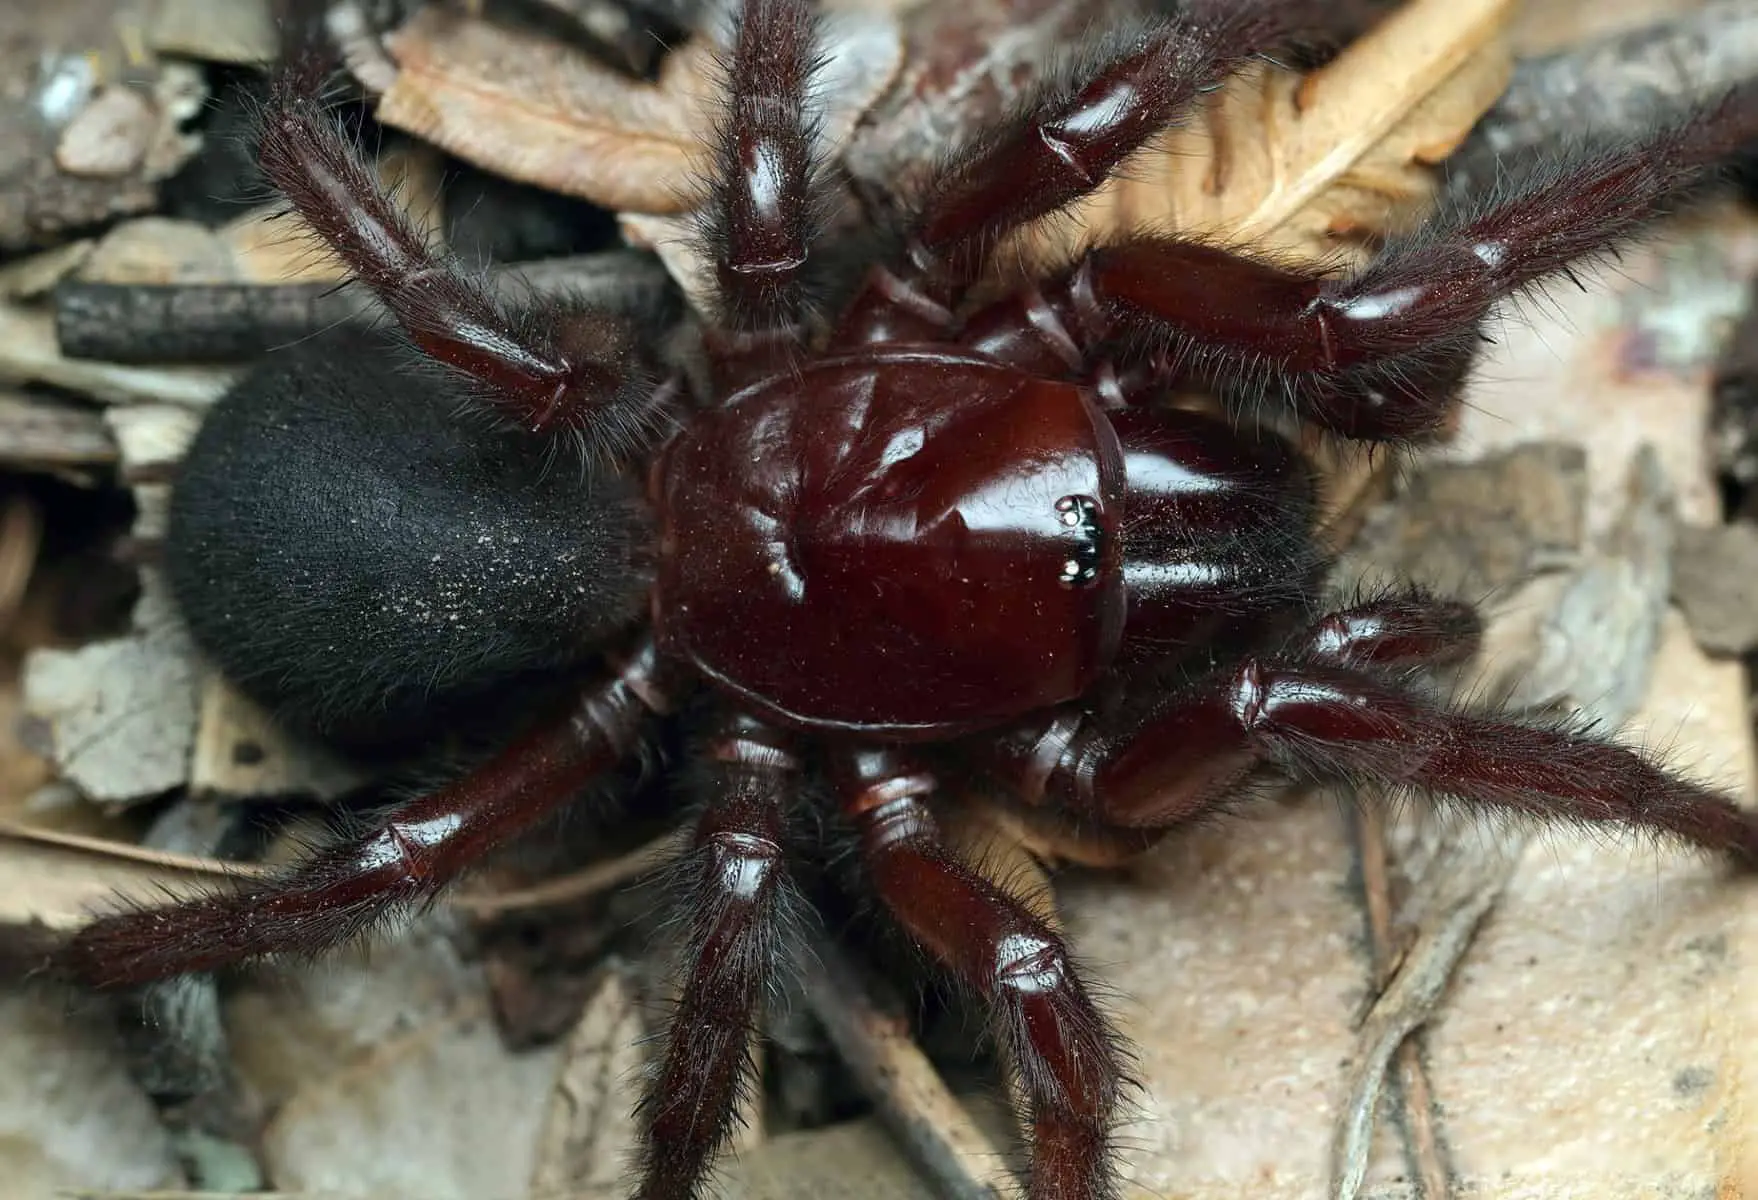 The Sydney funnel-web spider (Atrax robu